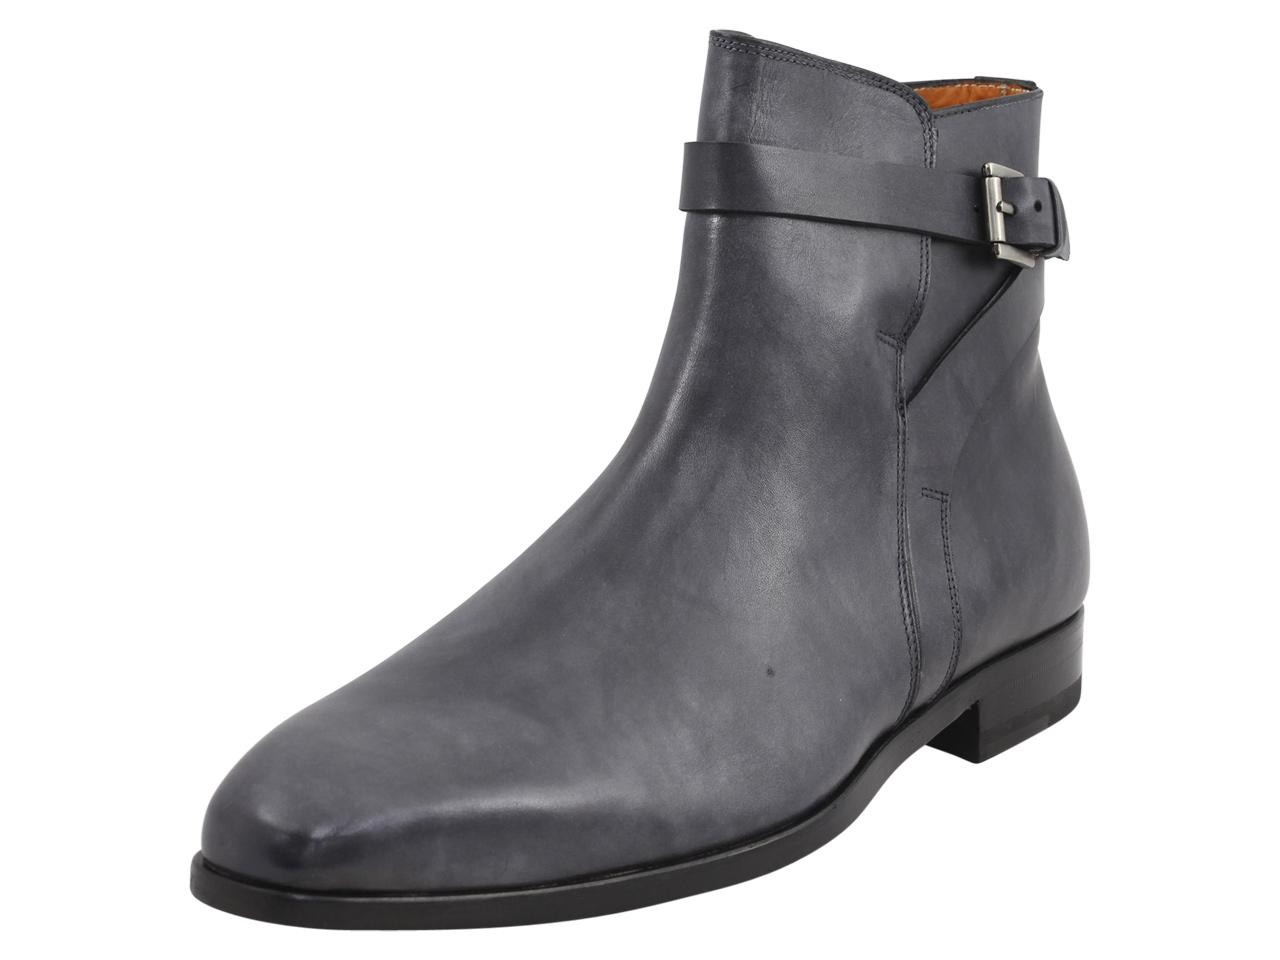 Mezlan Men's Viso Leather Ankle Boots Shoes - Black - 10 D(M) US